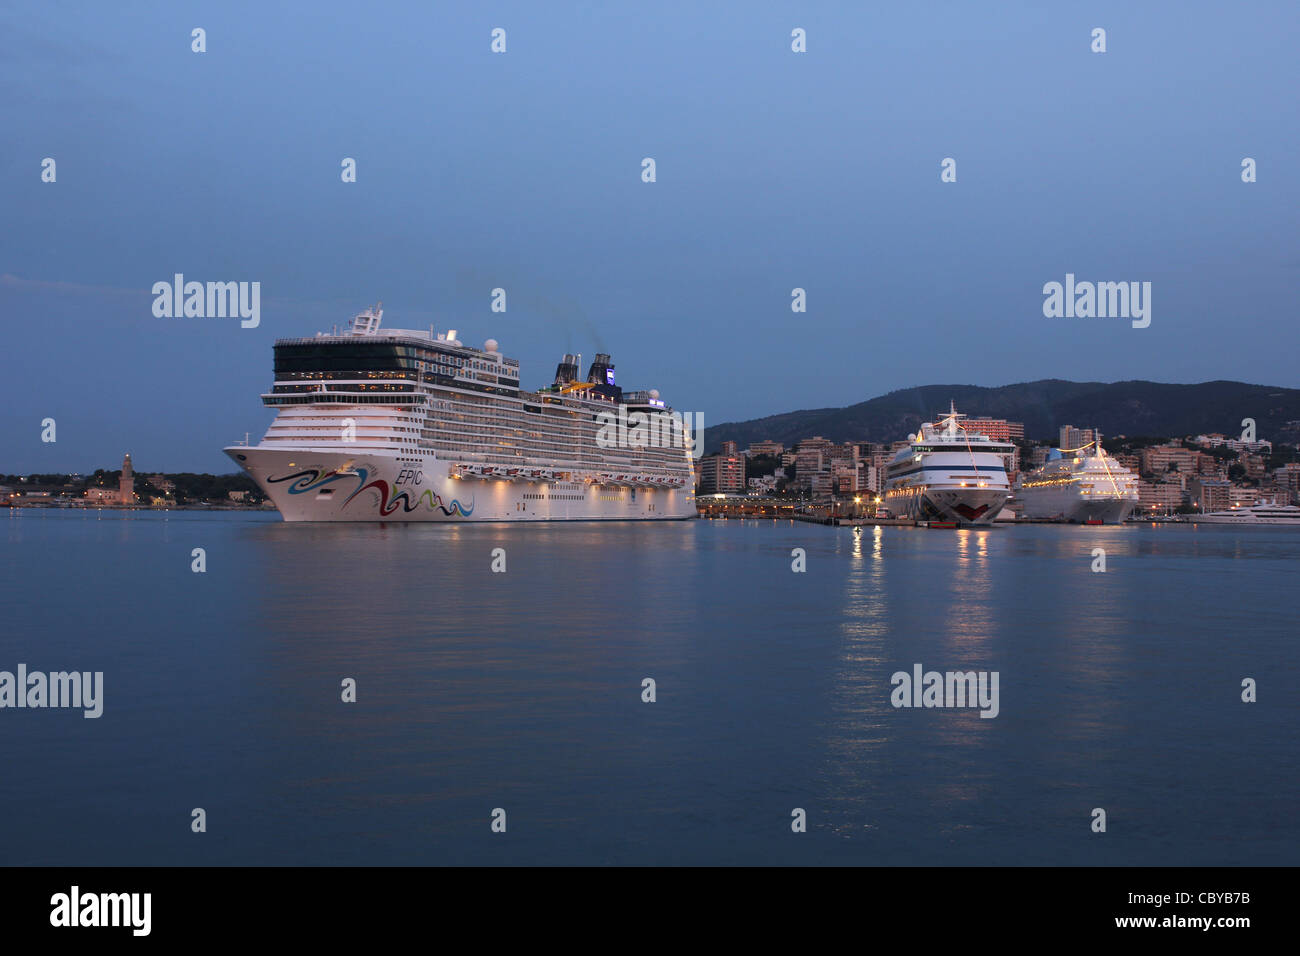 Aube avant votre arrivée Norwegian Cruise Line (NCL) "de croisière Norwegian Epic' au cours d'une de ses visites hebdomadaires à Palma de Mallorca Banque D'Images